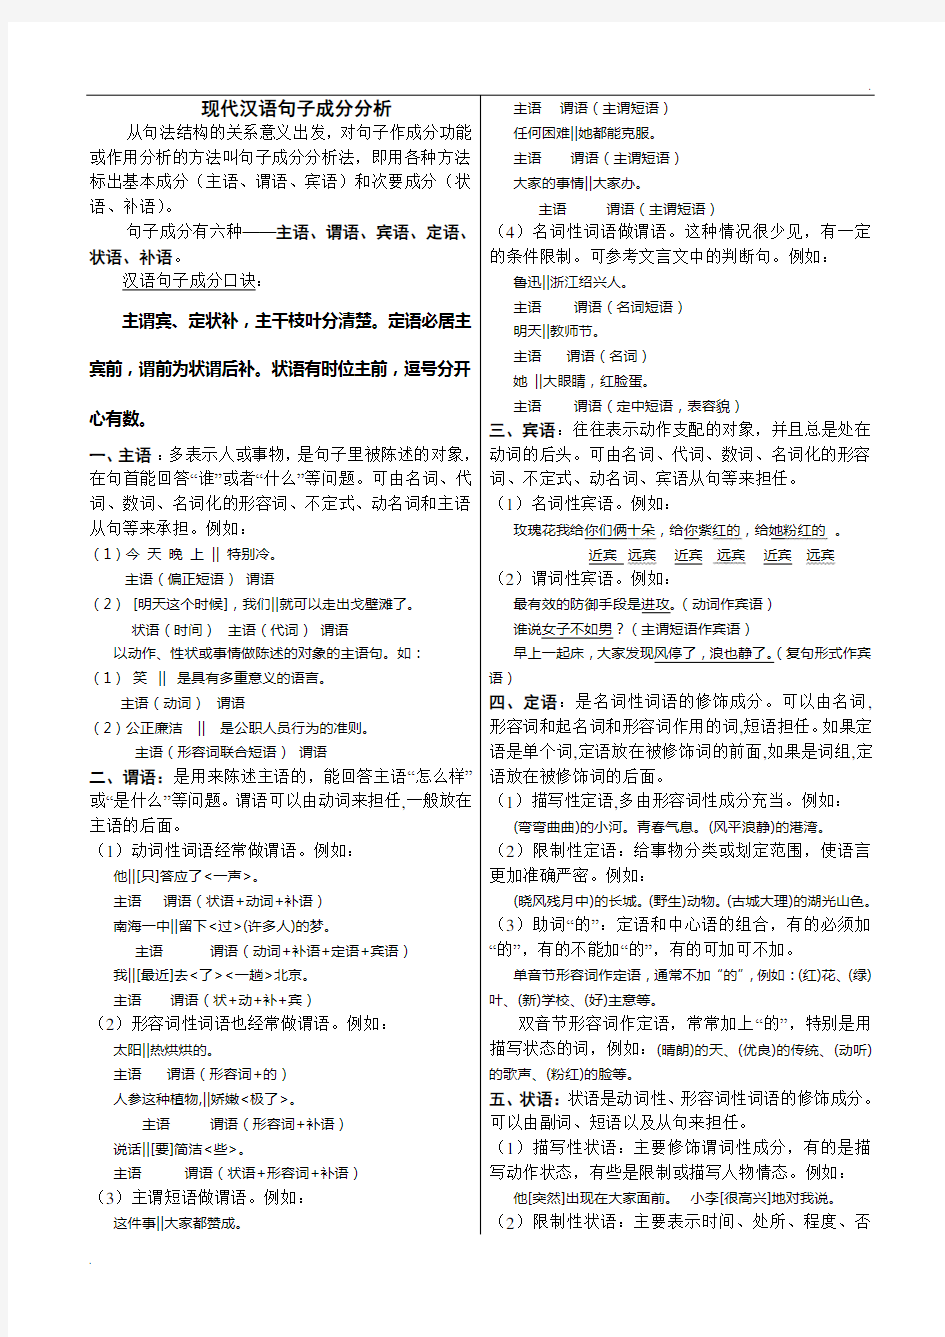 现代汉语句子成分分析